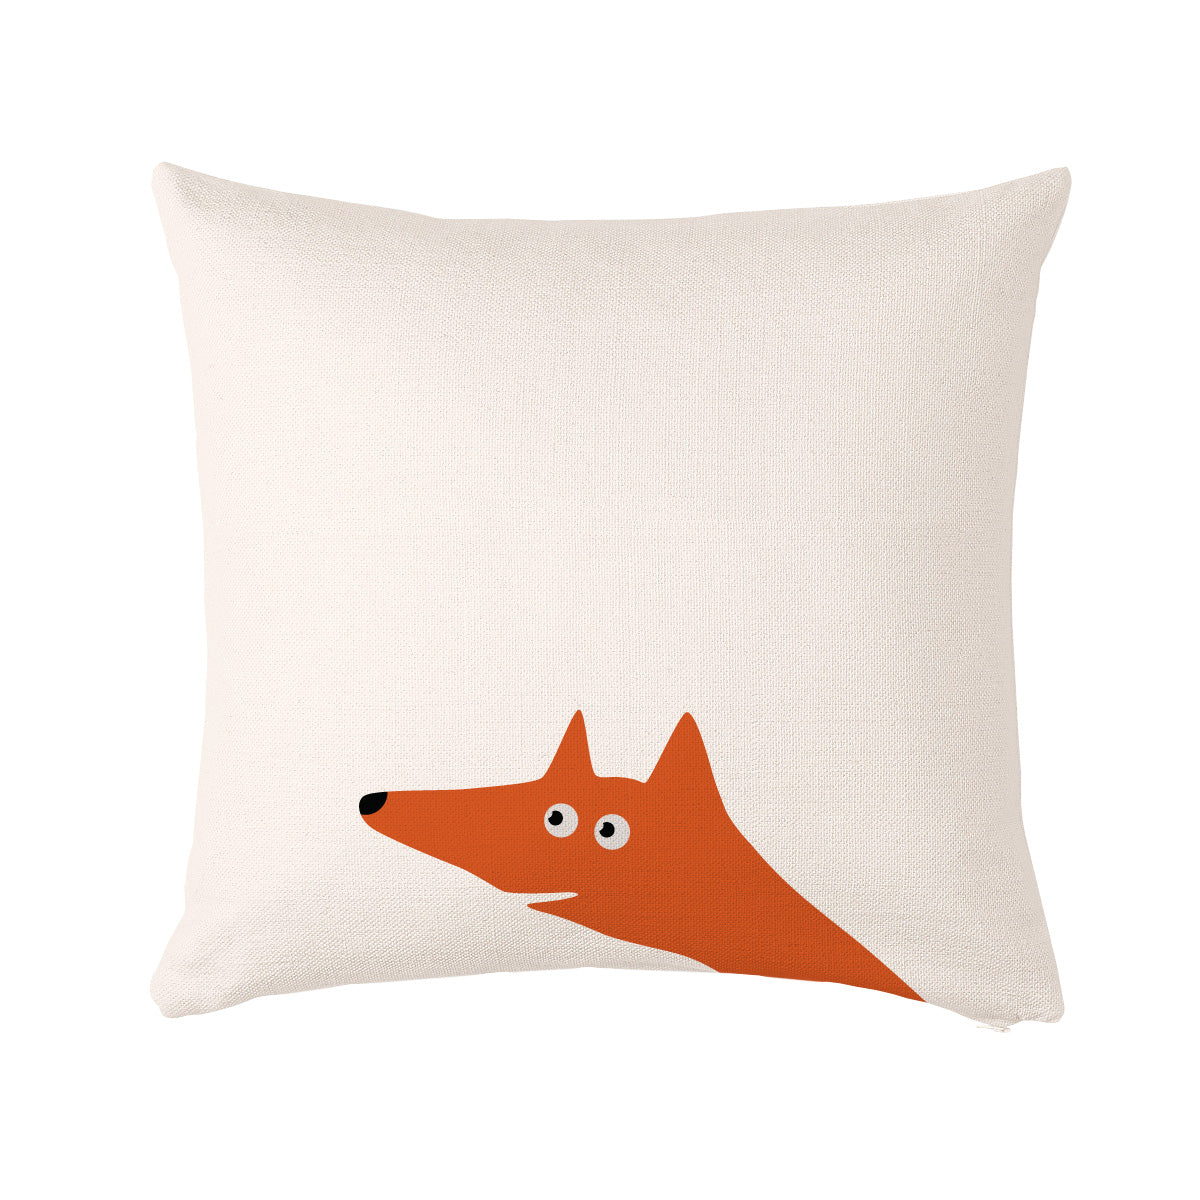 Fox cushion or cushion cover 50x50cm (20x20